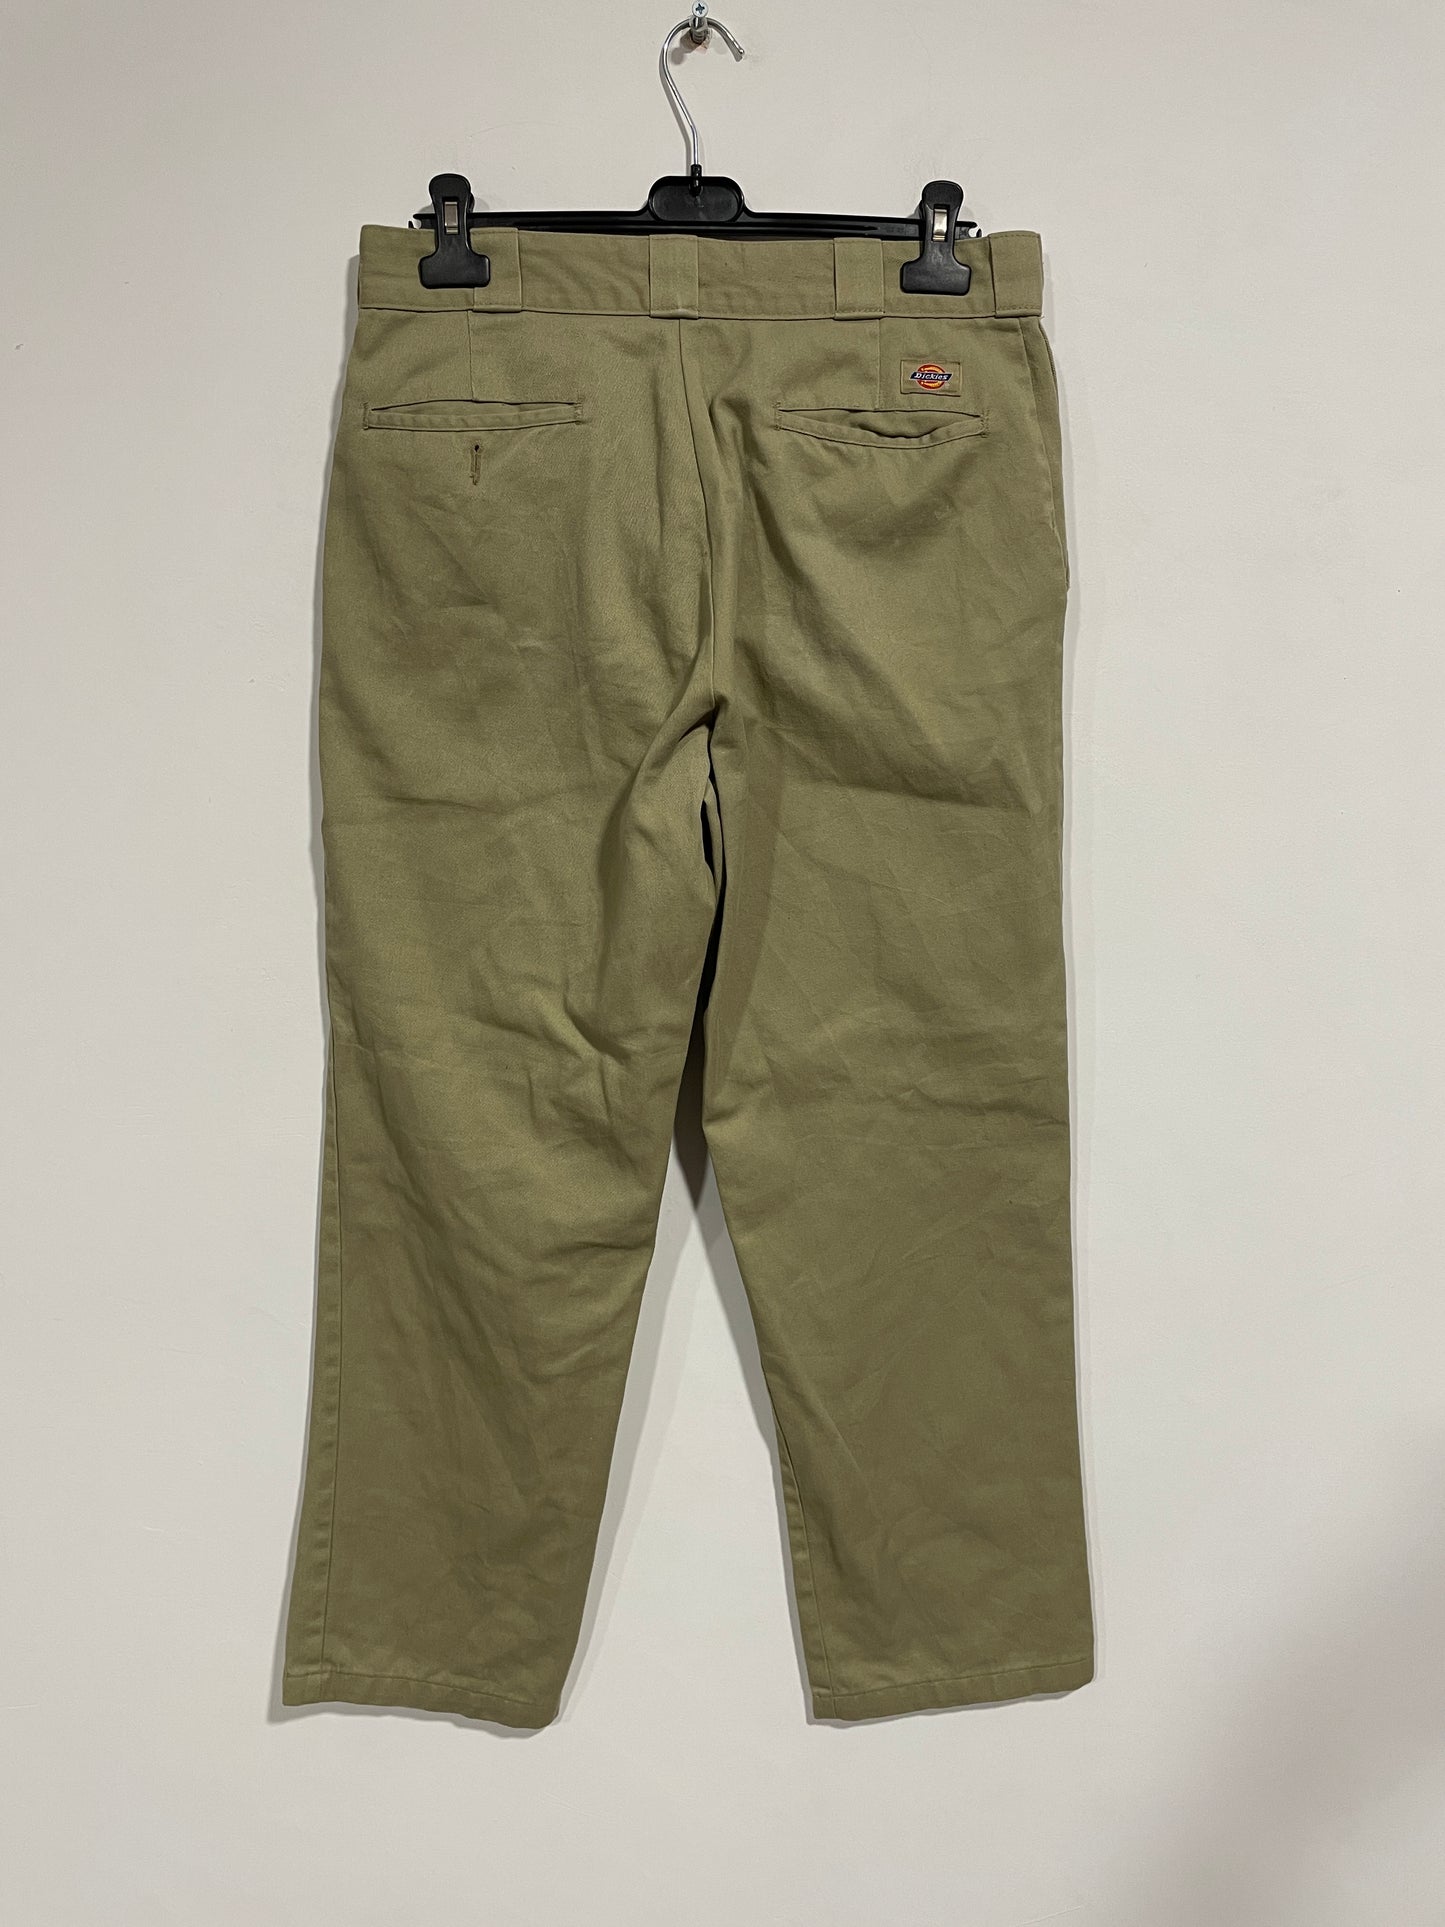 Pantalone baggy Dickies 874 (MR080)